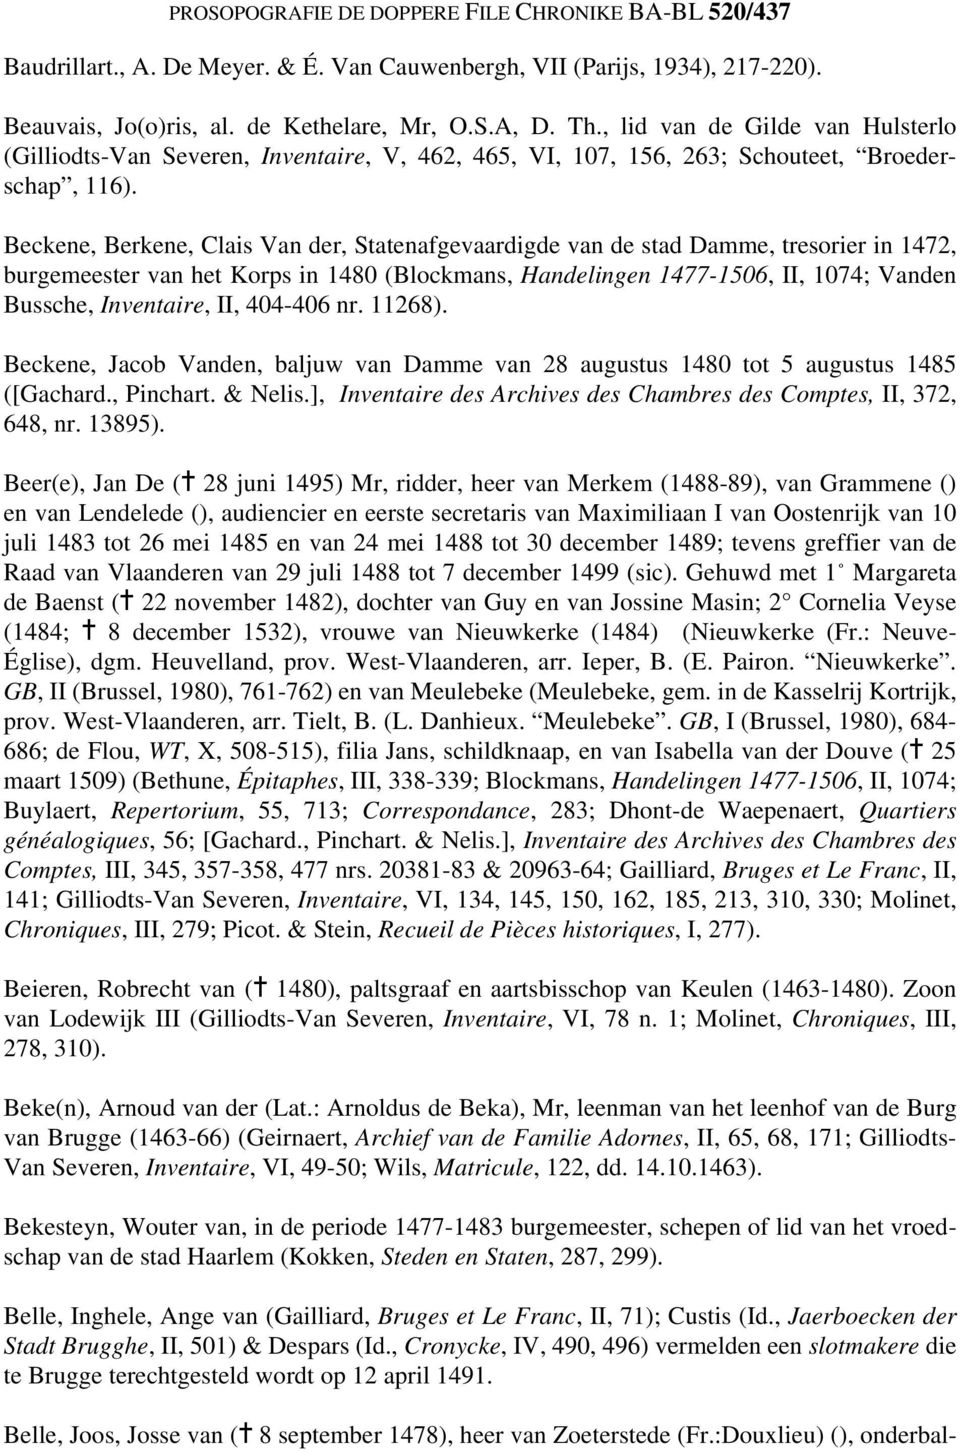 Beckene, Berkene, Clais Van der, Statenafgevaardigde van de stad Damme, tresorier in 1472, burgemeester van het Korps in 1480 (Blockmans, Handelingen 1477-1506, II, 1074; Vanden Bussche, Inventaire,